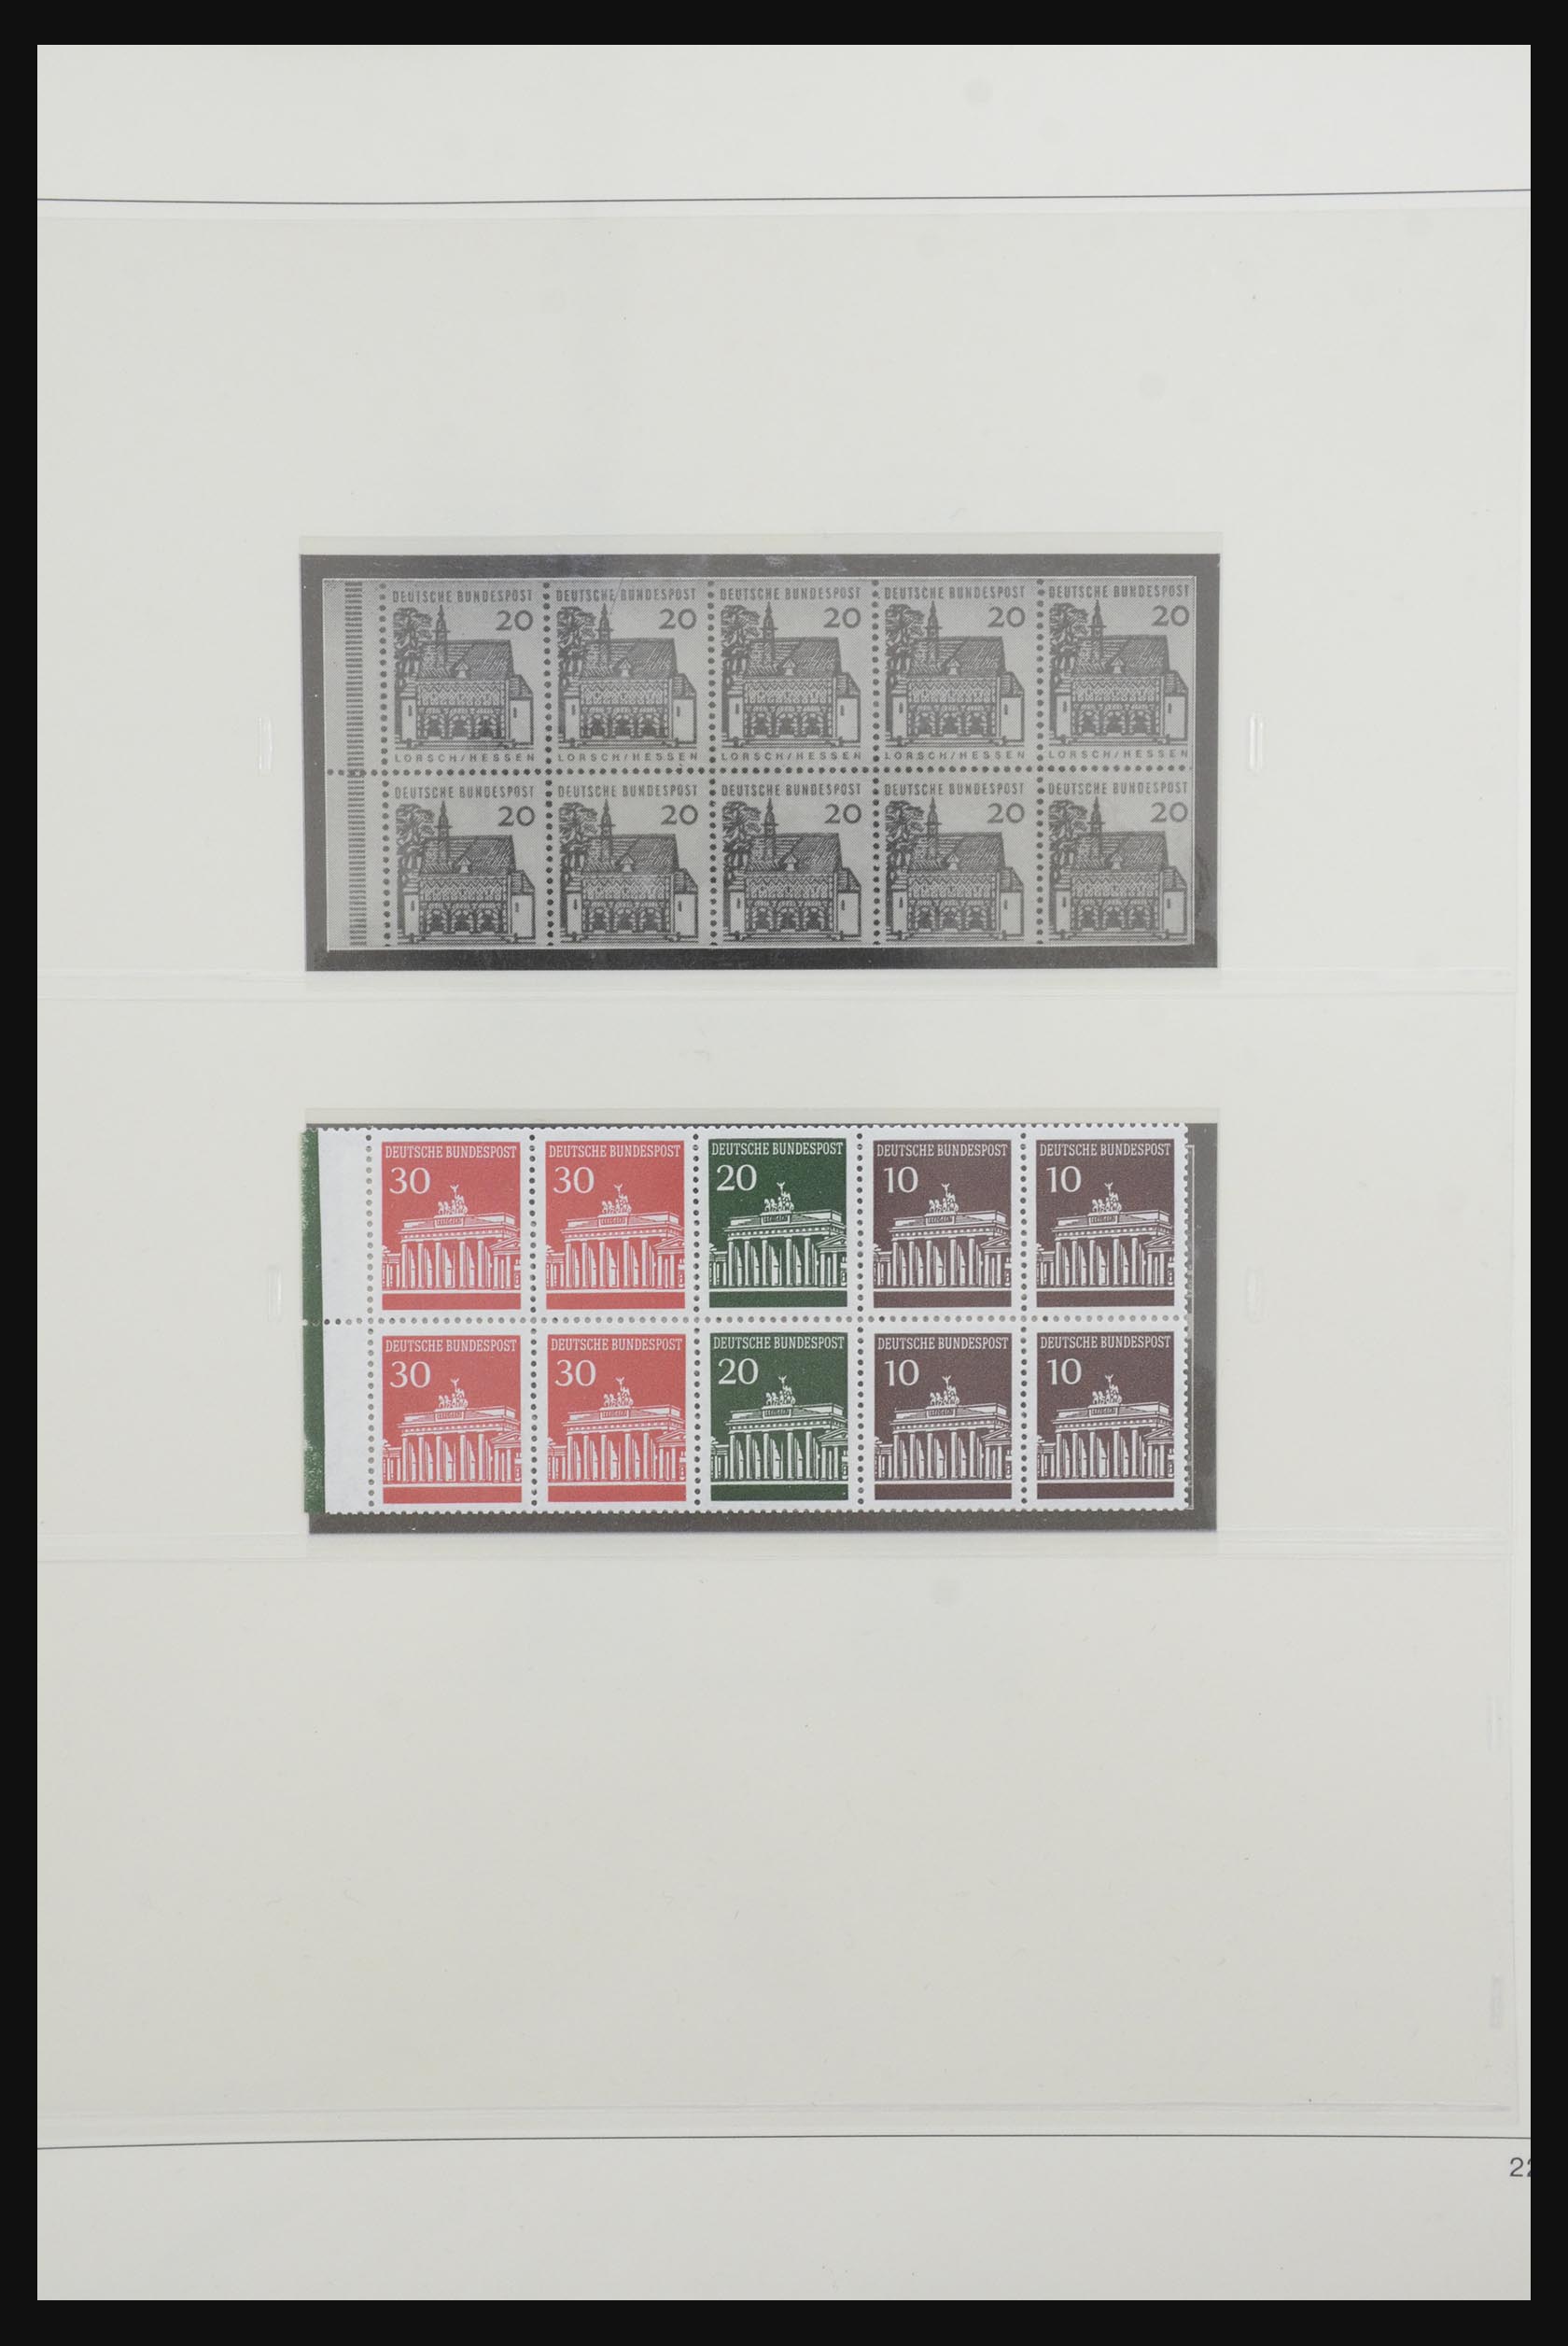 31842 030 - 31842 Bundespost combinaties 1951-2003.